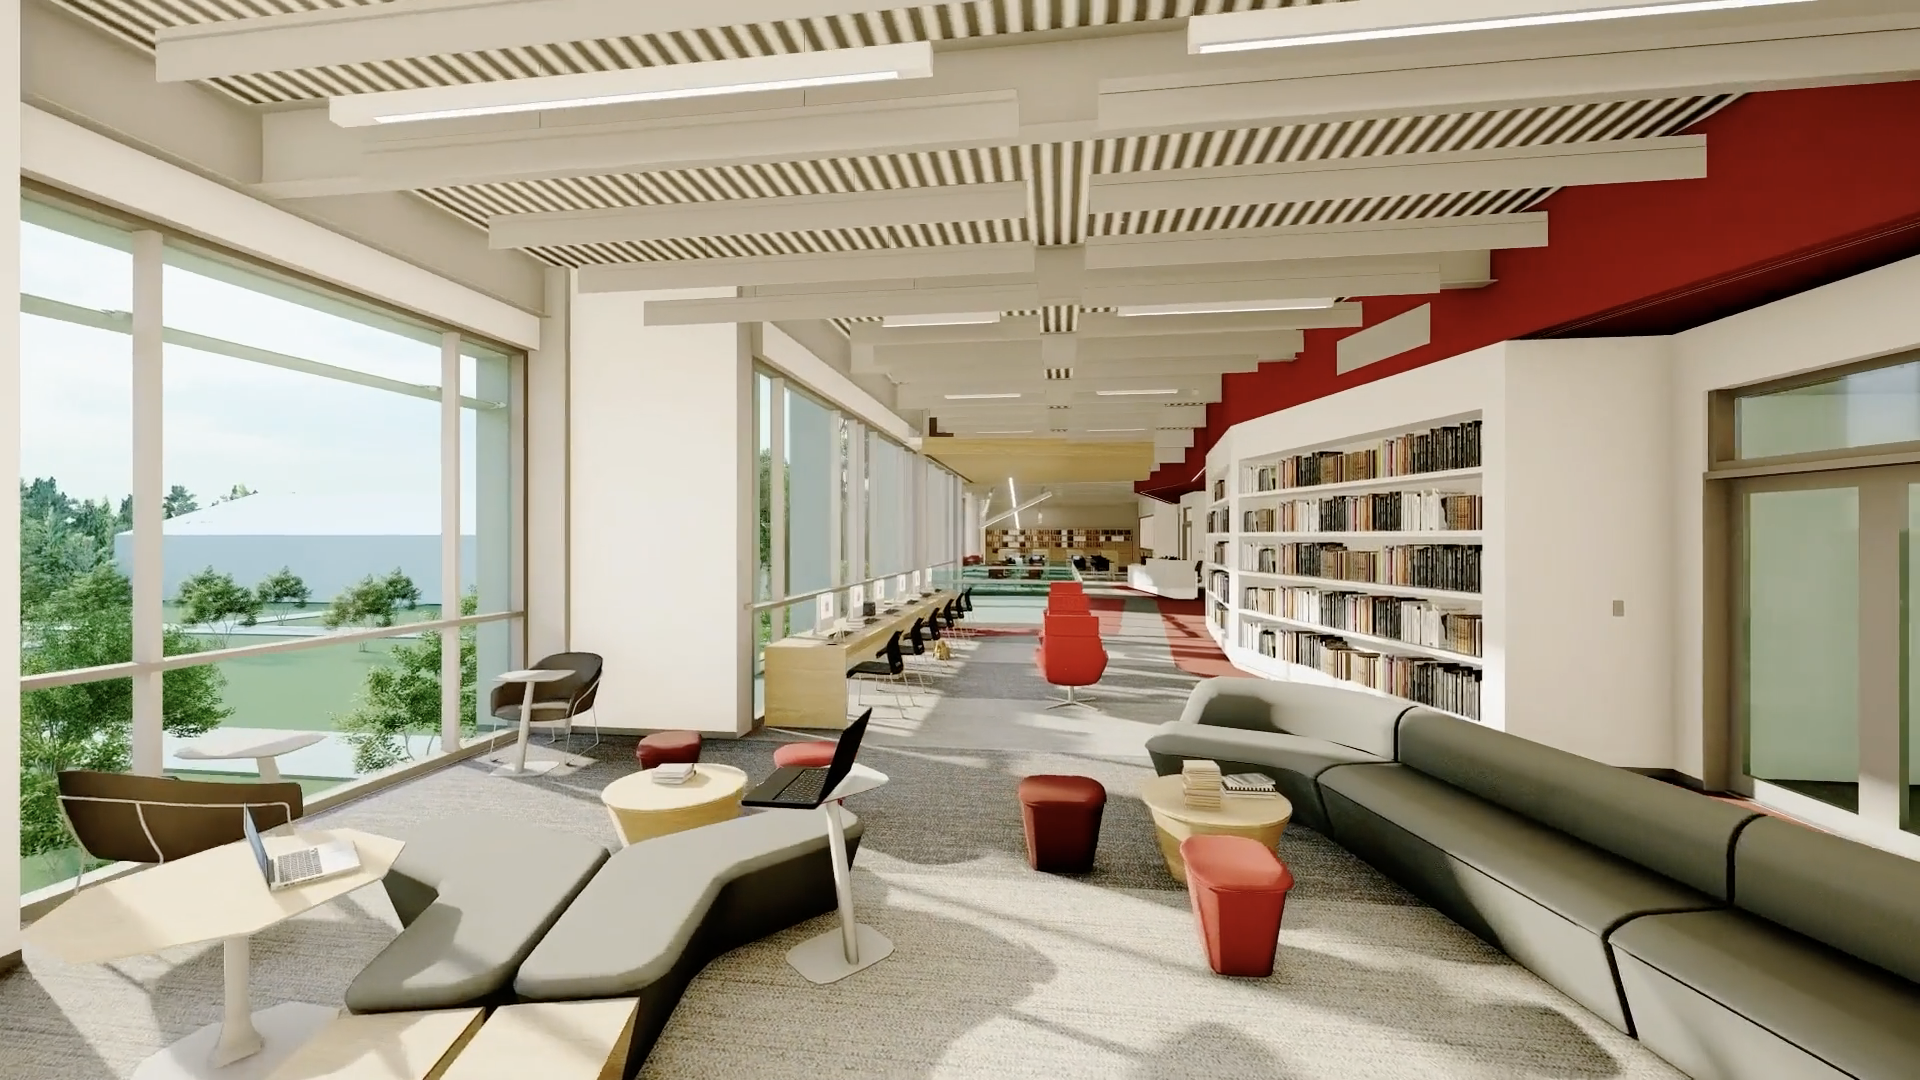 New Upper School Humanities Building Library